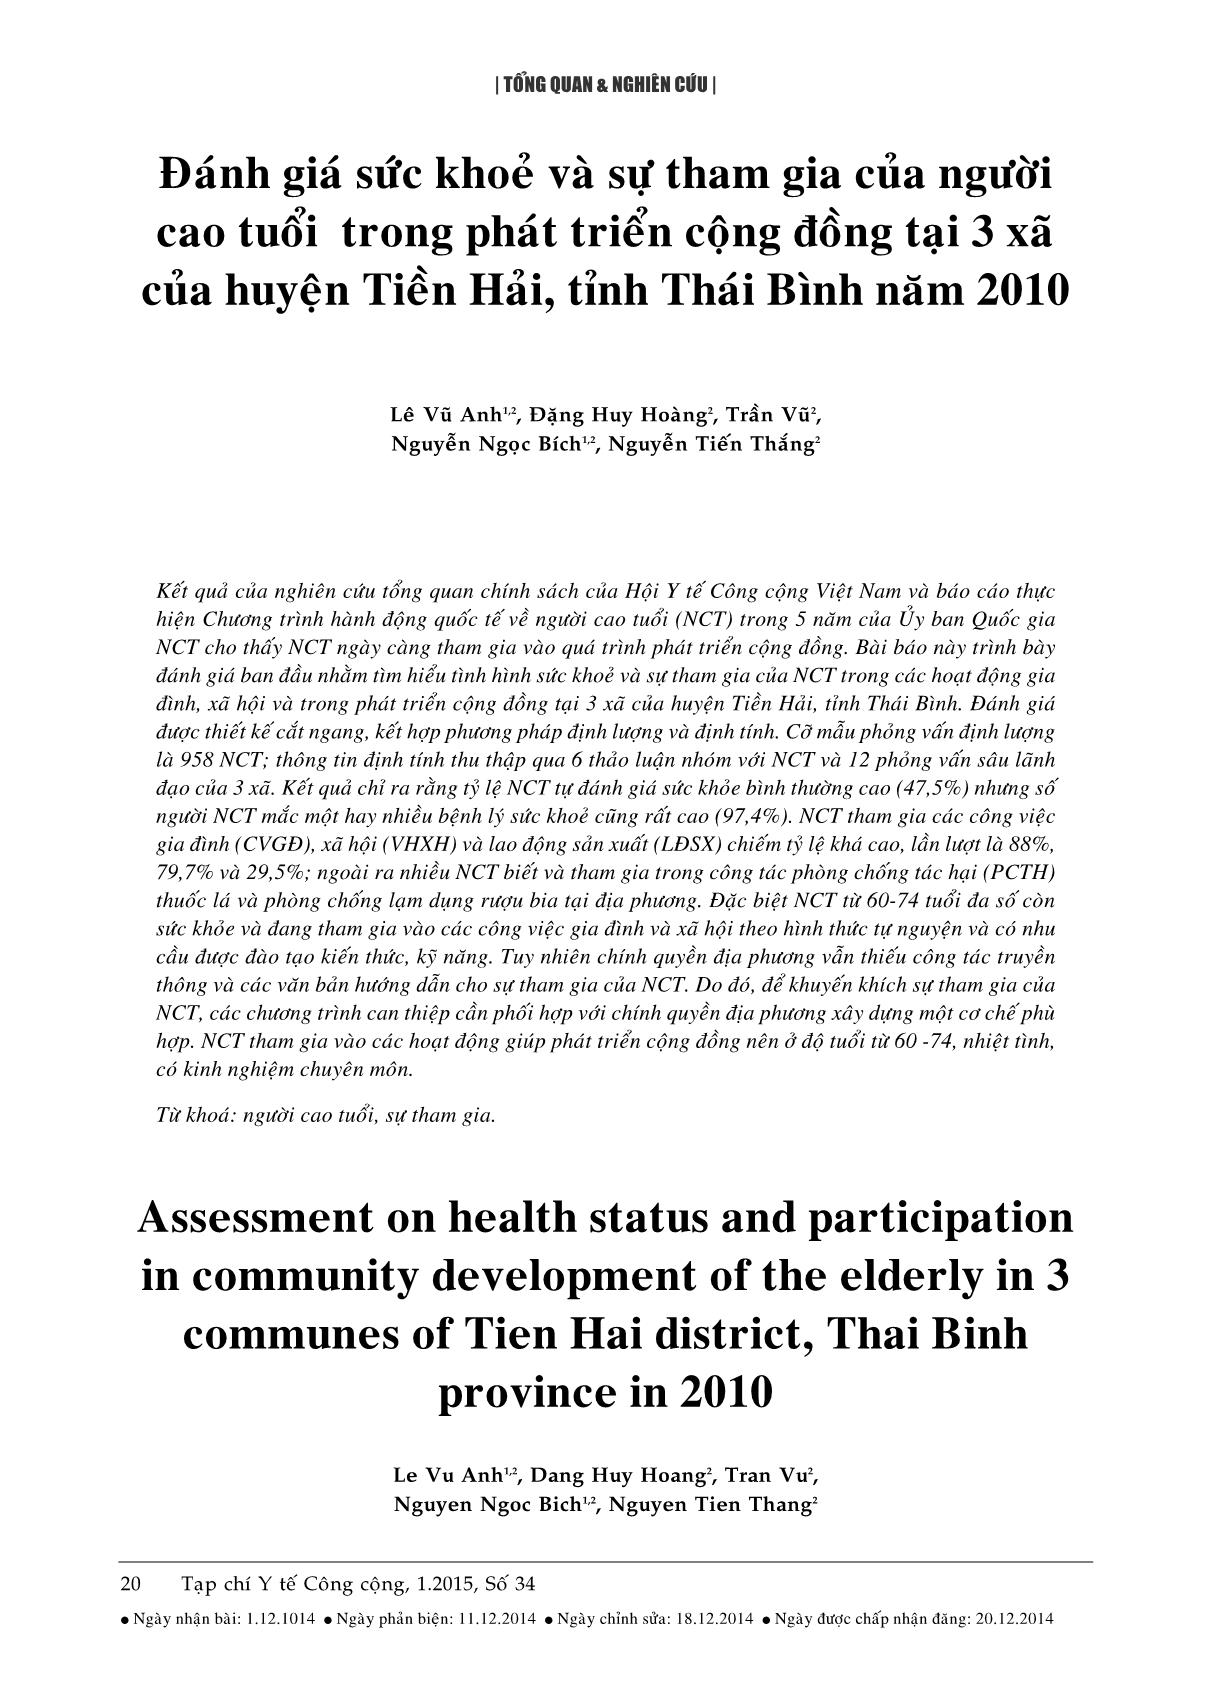 Đánh giá sức khoẻ và sự tham gia của người cao tuổi trong phát triển cộng đồng tại 3 xã của huyện Tiền Hải, tỉnh Thái Bình năm 2010 trang 1